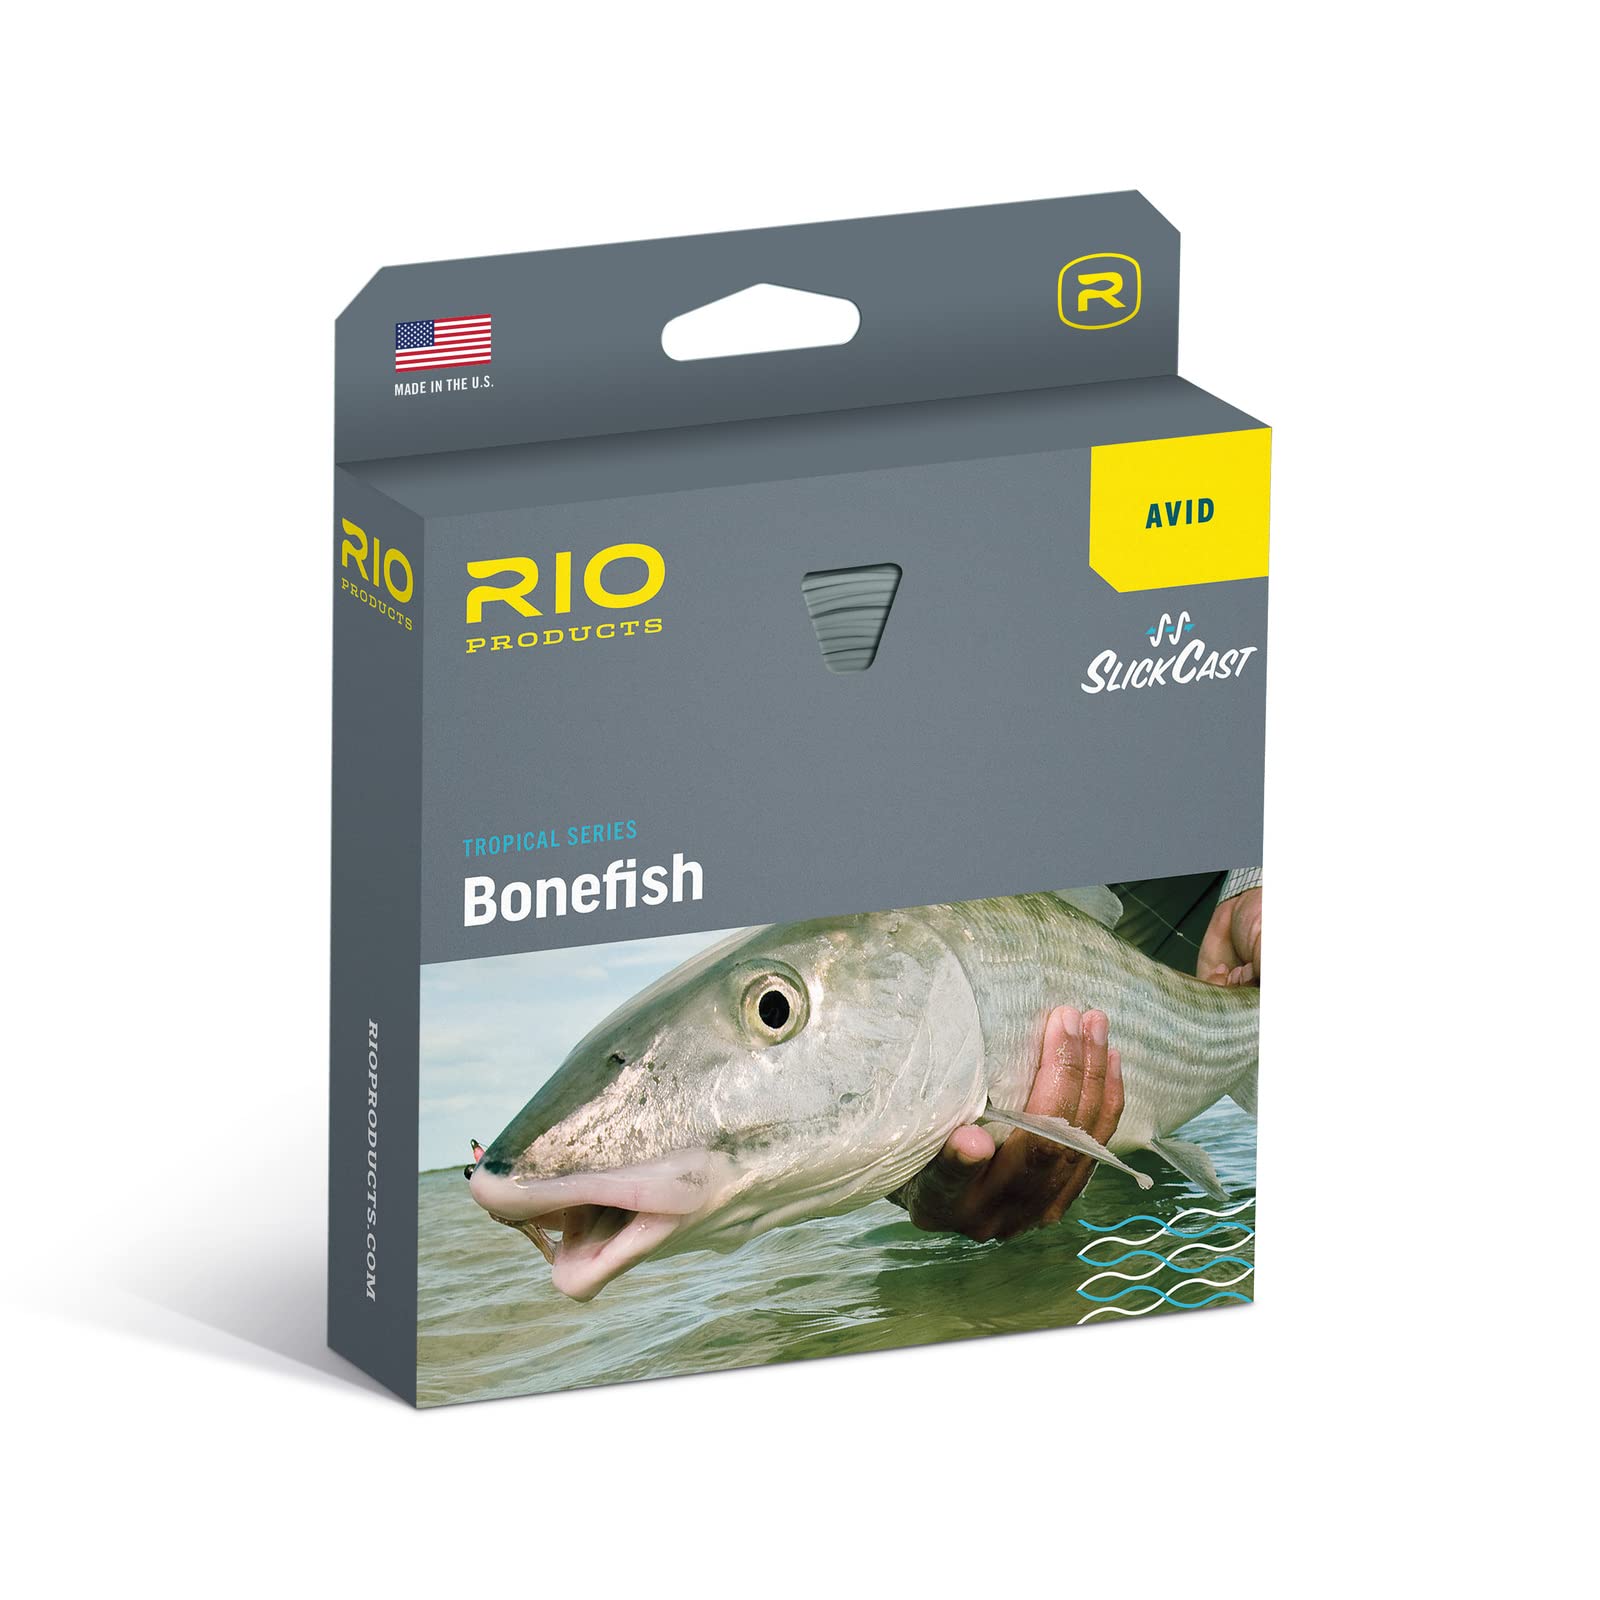 RIO Products Avid Bonefish 海水フライライン SlickCast イージーキャスティング トロピカルシリーズ W